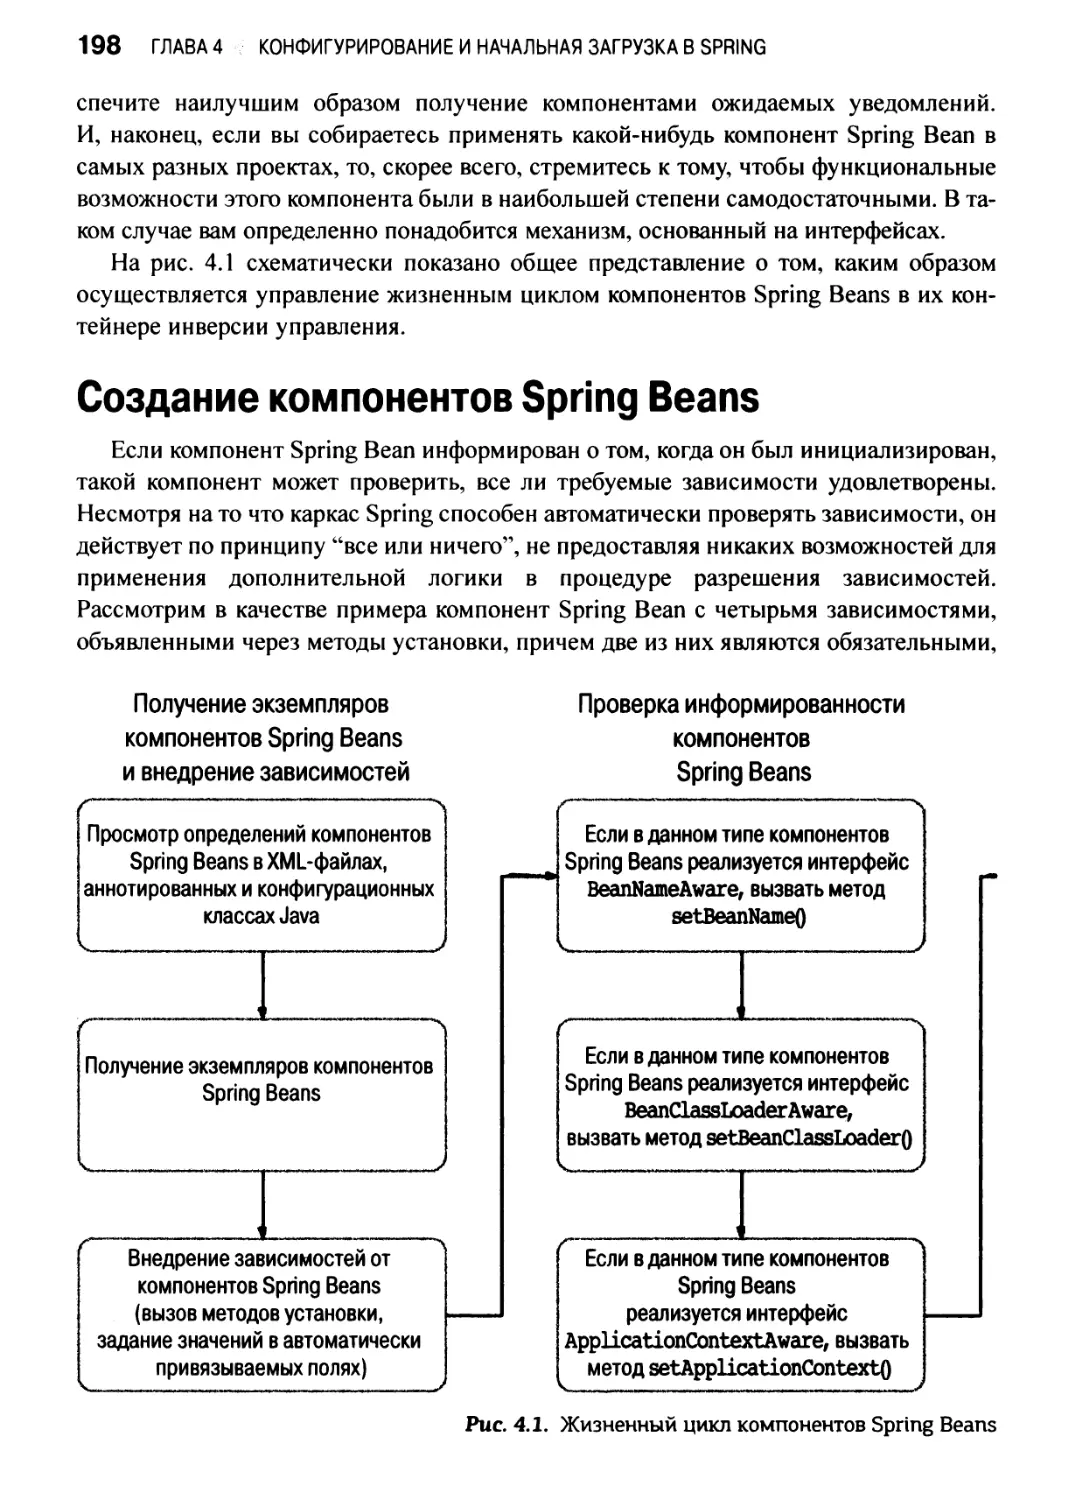 Создание компонентов Spring Beans